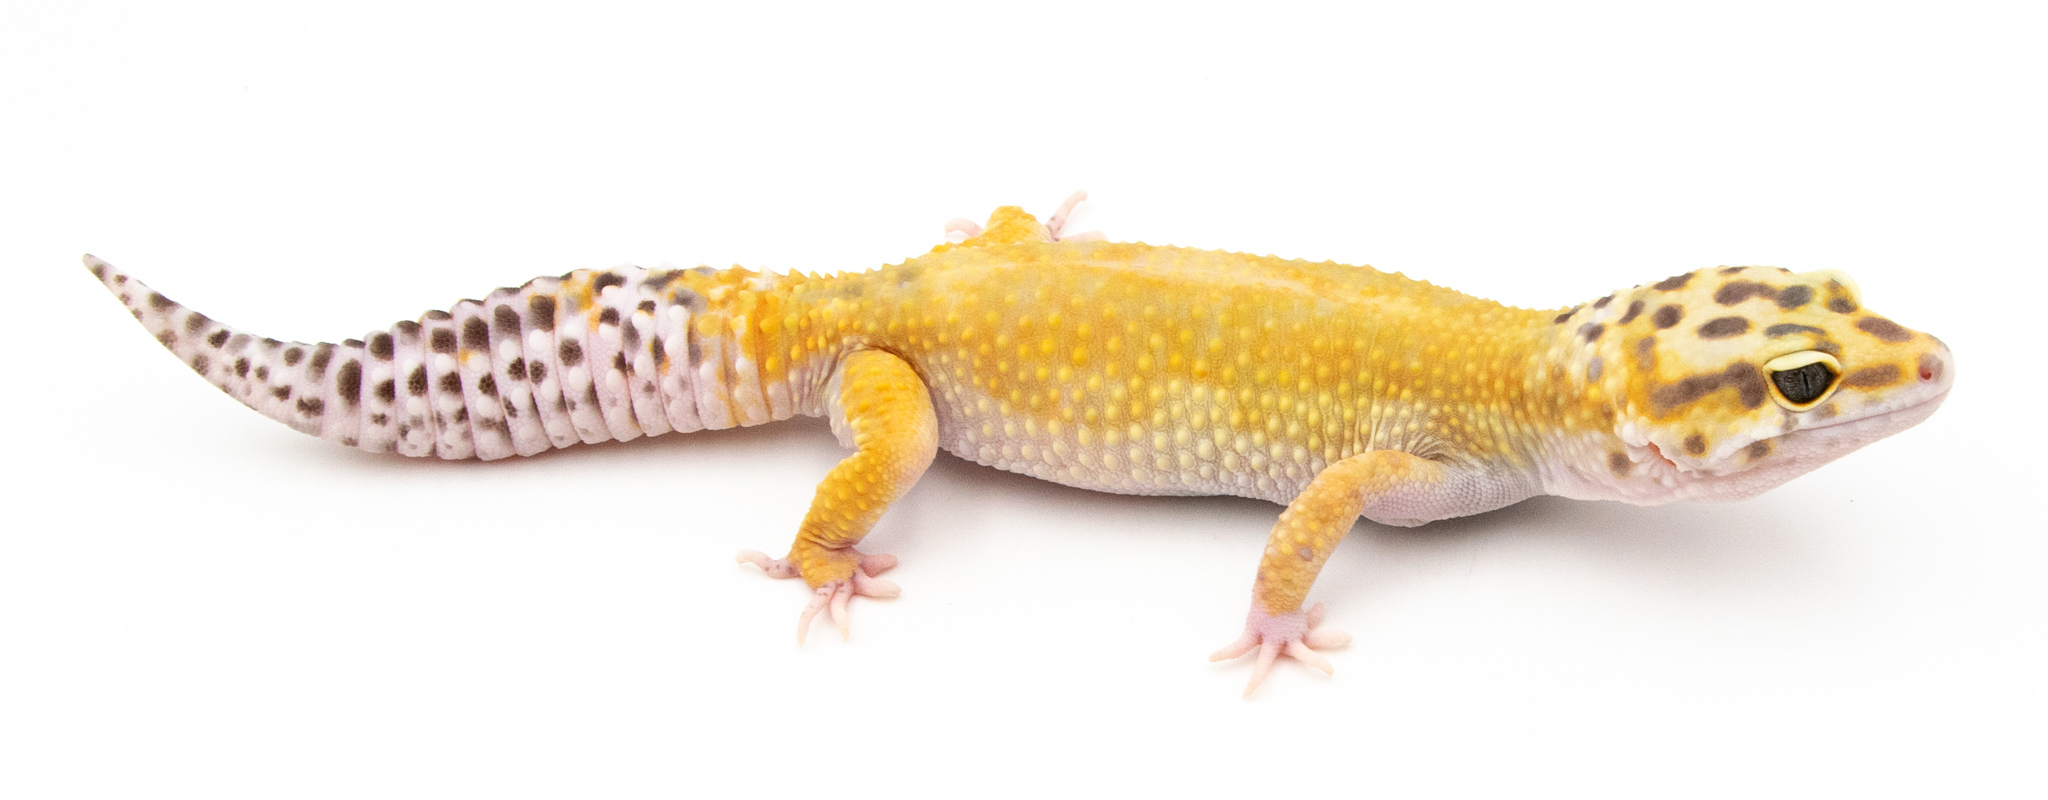 EJ100 - Gecko Léopard - Eublepharis Macularius  Tangerine het bell - &#9792; - NC 2021